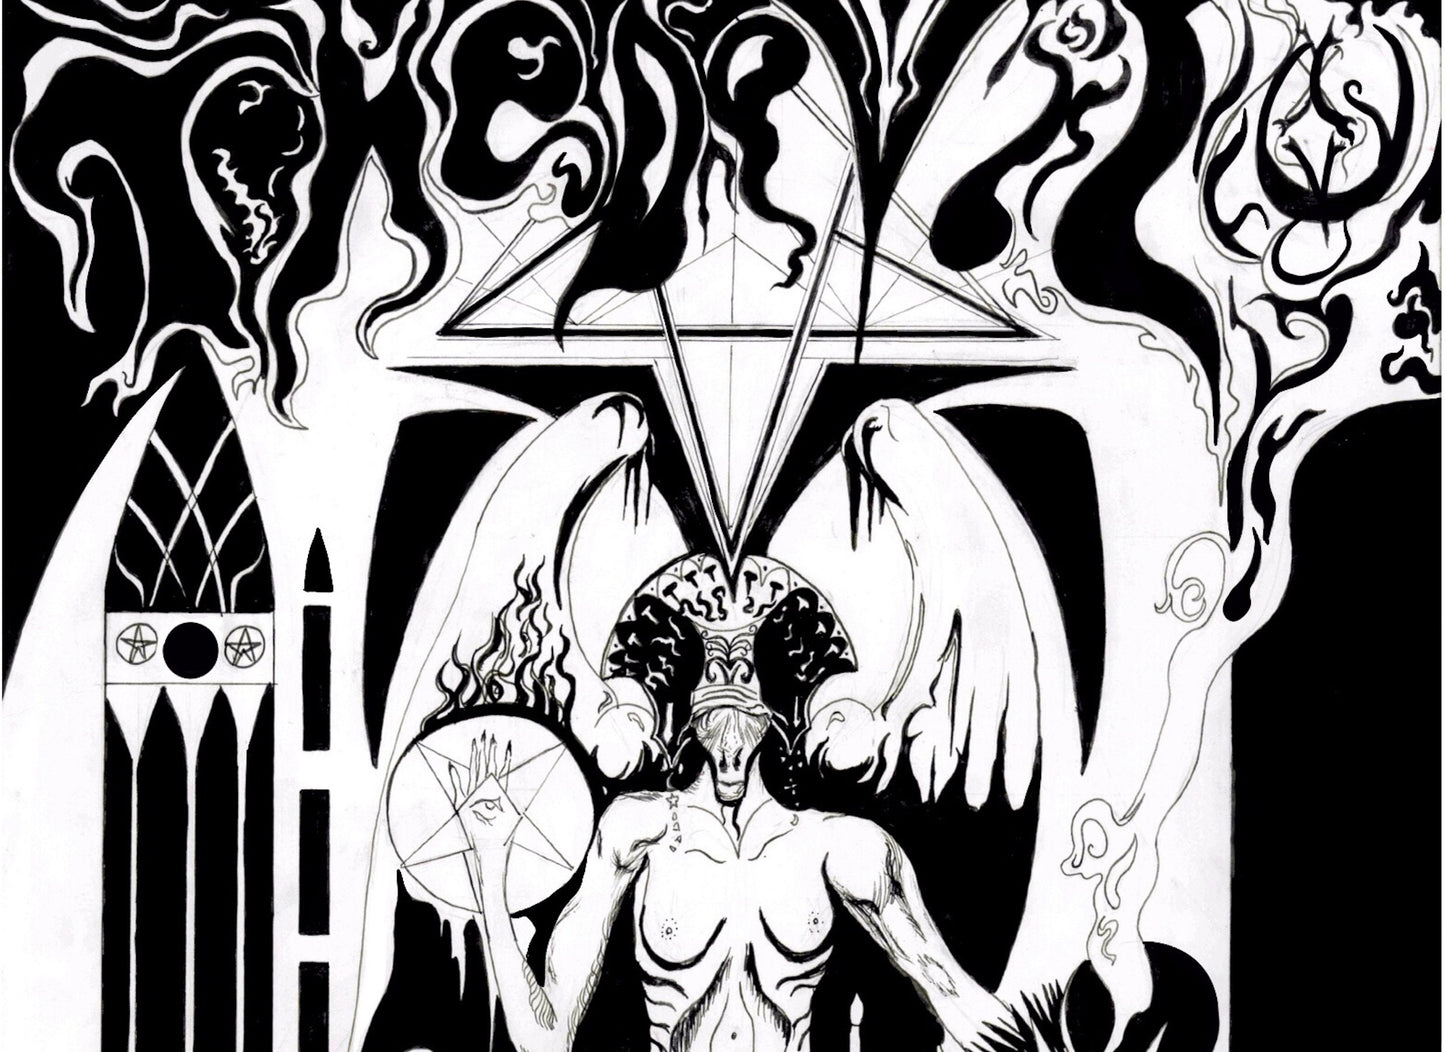 Le tarot du diable, stylo psychédélique et impression Baphomet à l'encre, oeuvre occulte ésotérique par Hierophant Prints